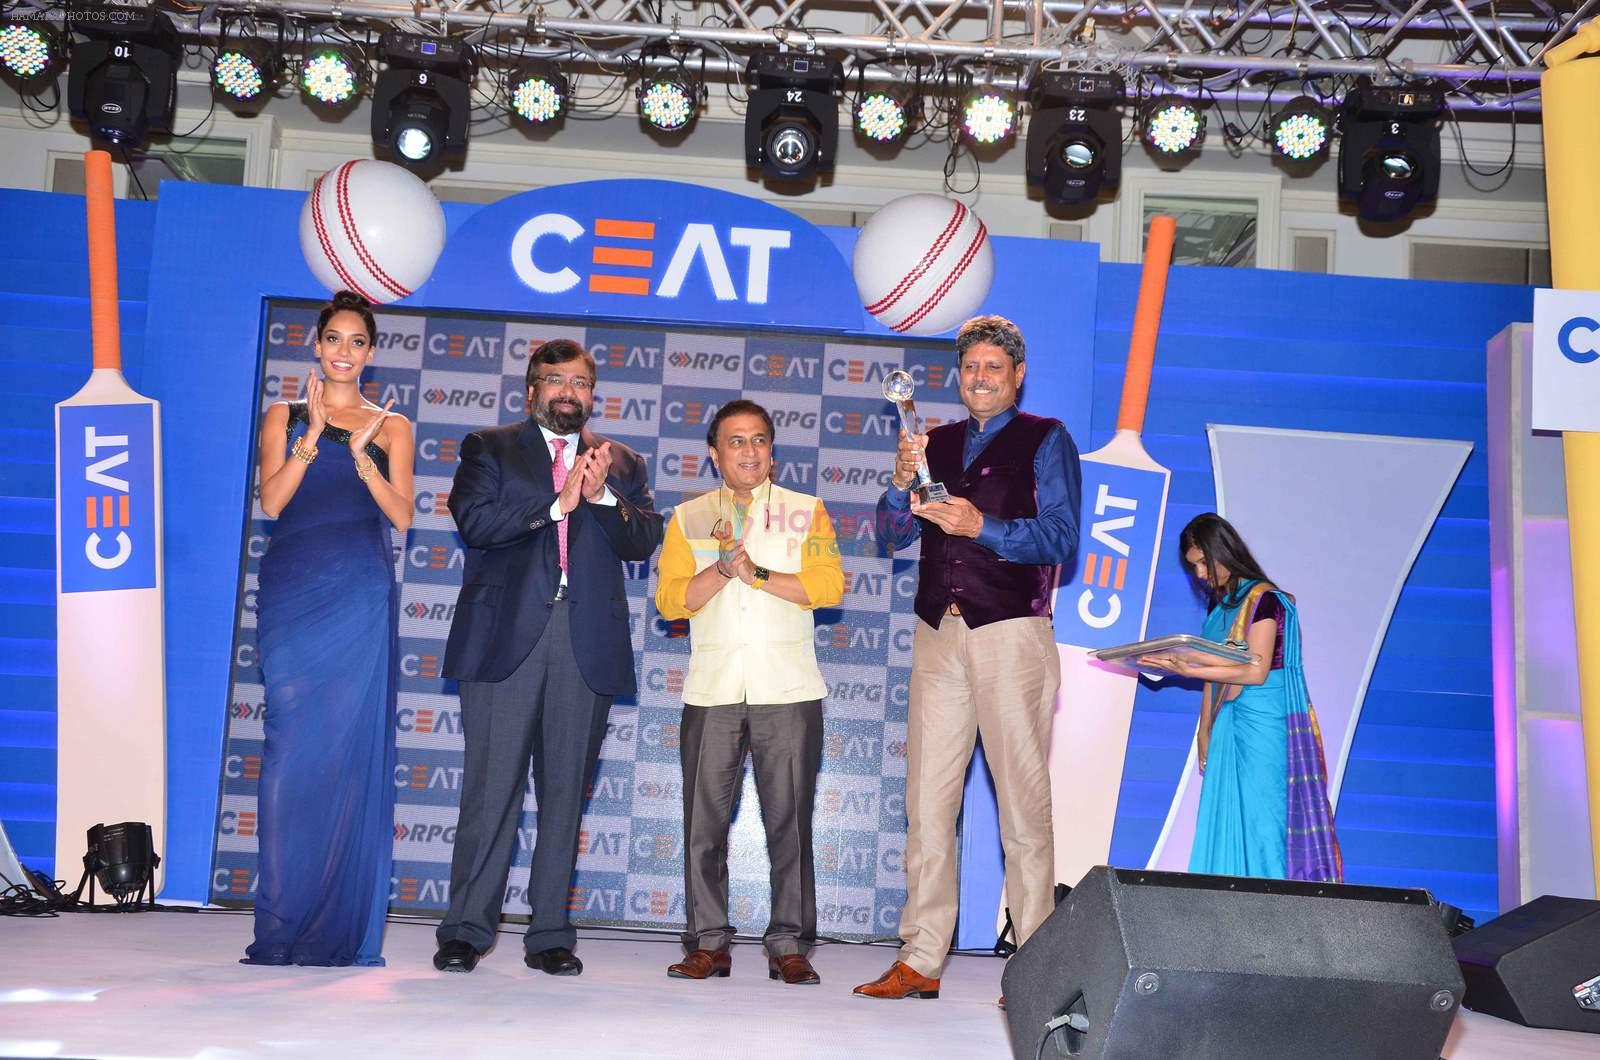 Lisa Haydon, Sunil Gavaskar, Kapil Dev  at Ceat Cricket Awards in Trident, Mumbai on 25th May 2015